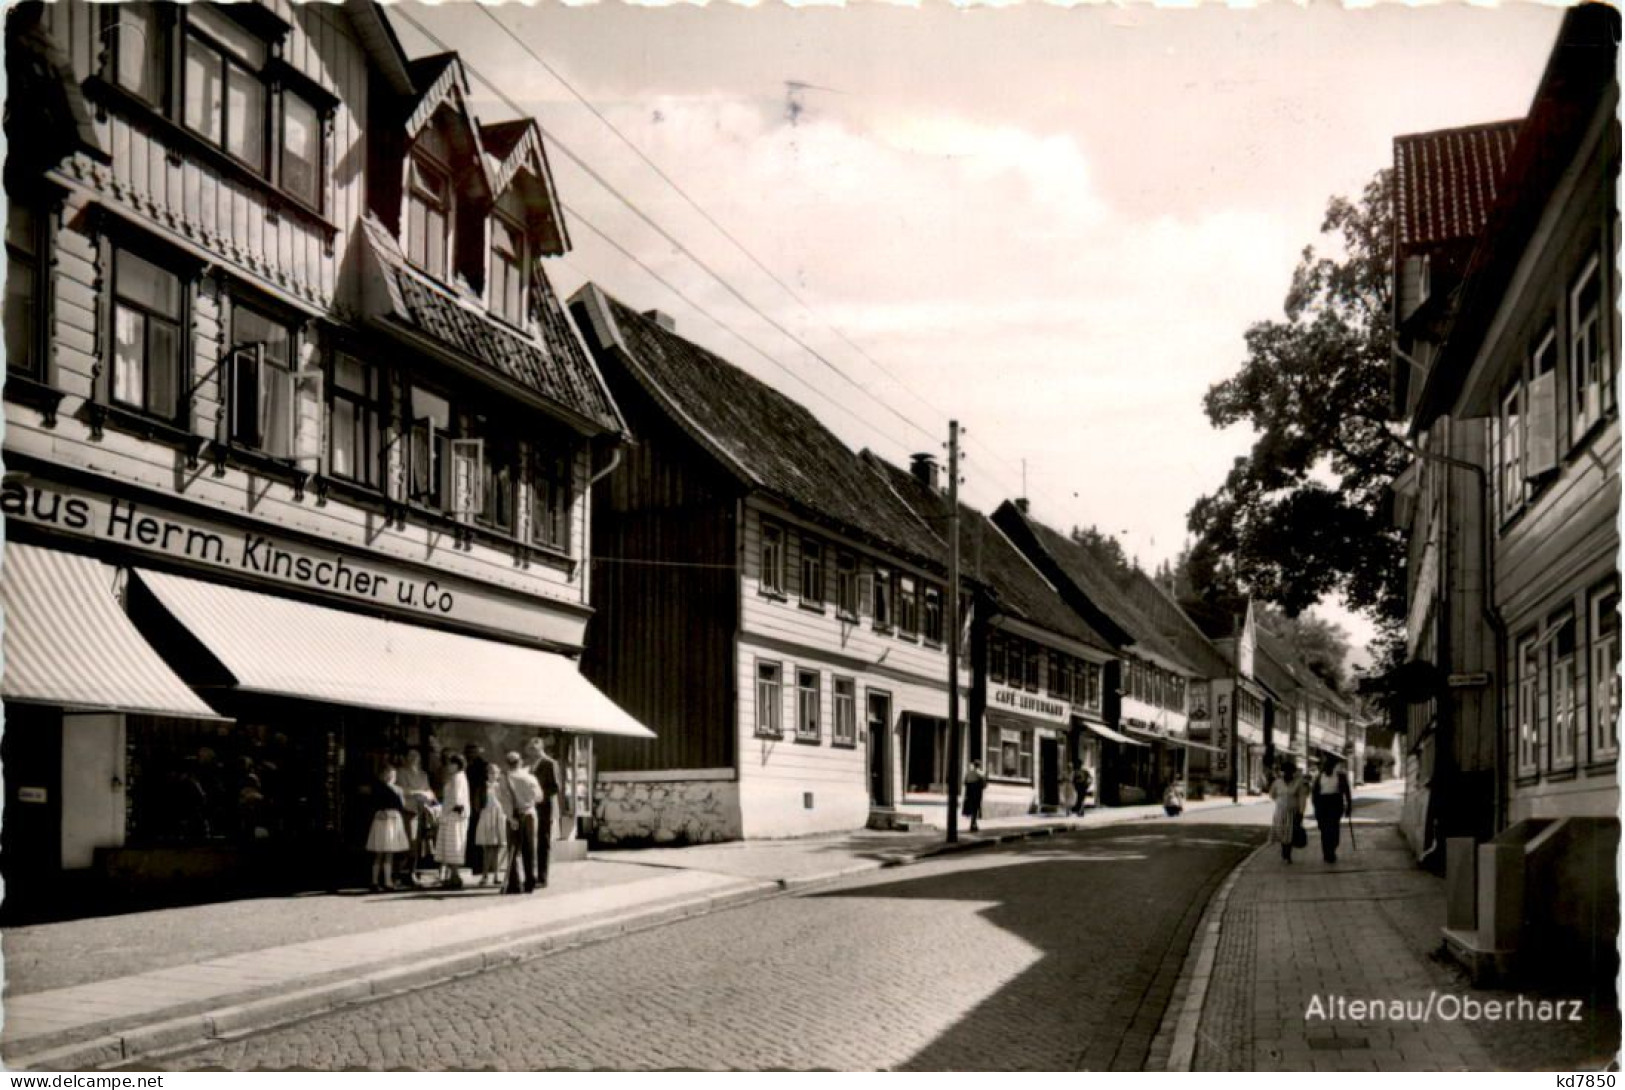 Altenau/Oberharz - Altenau